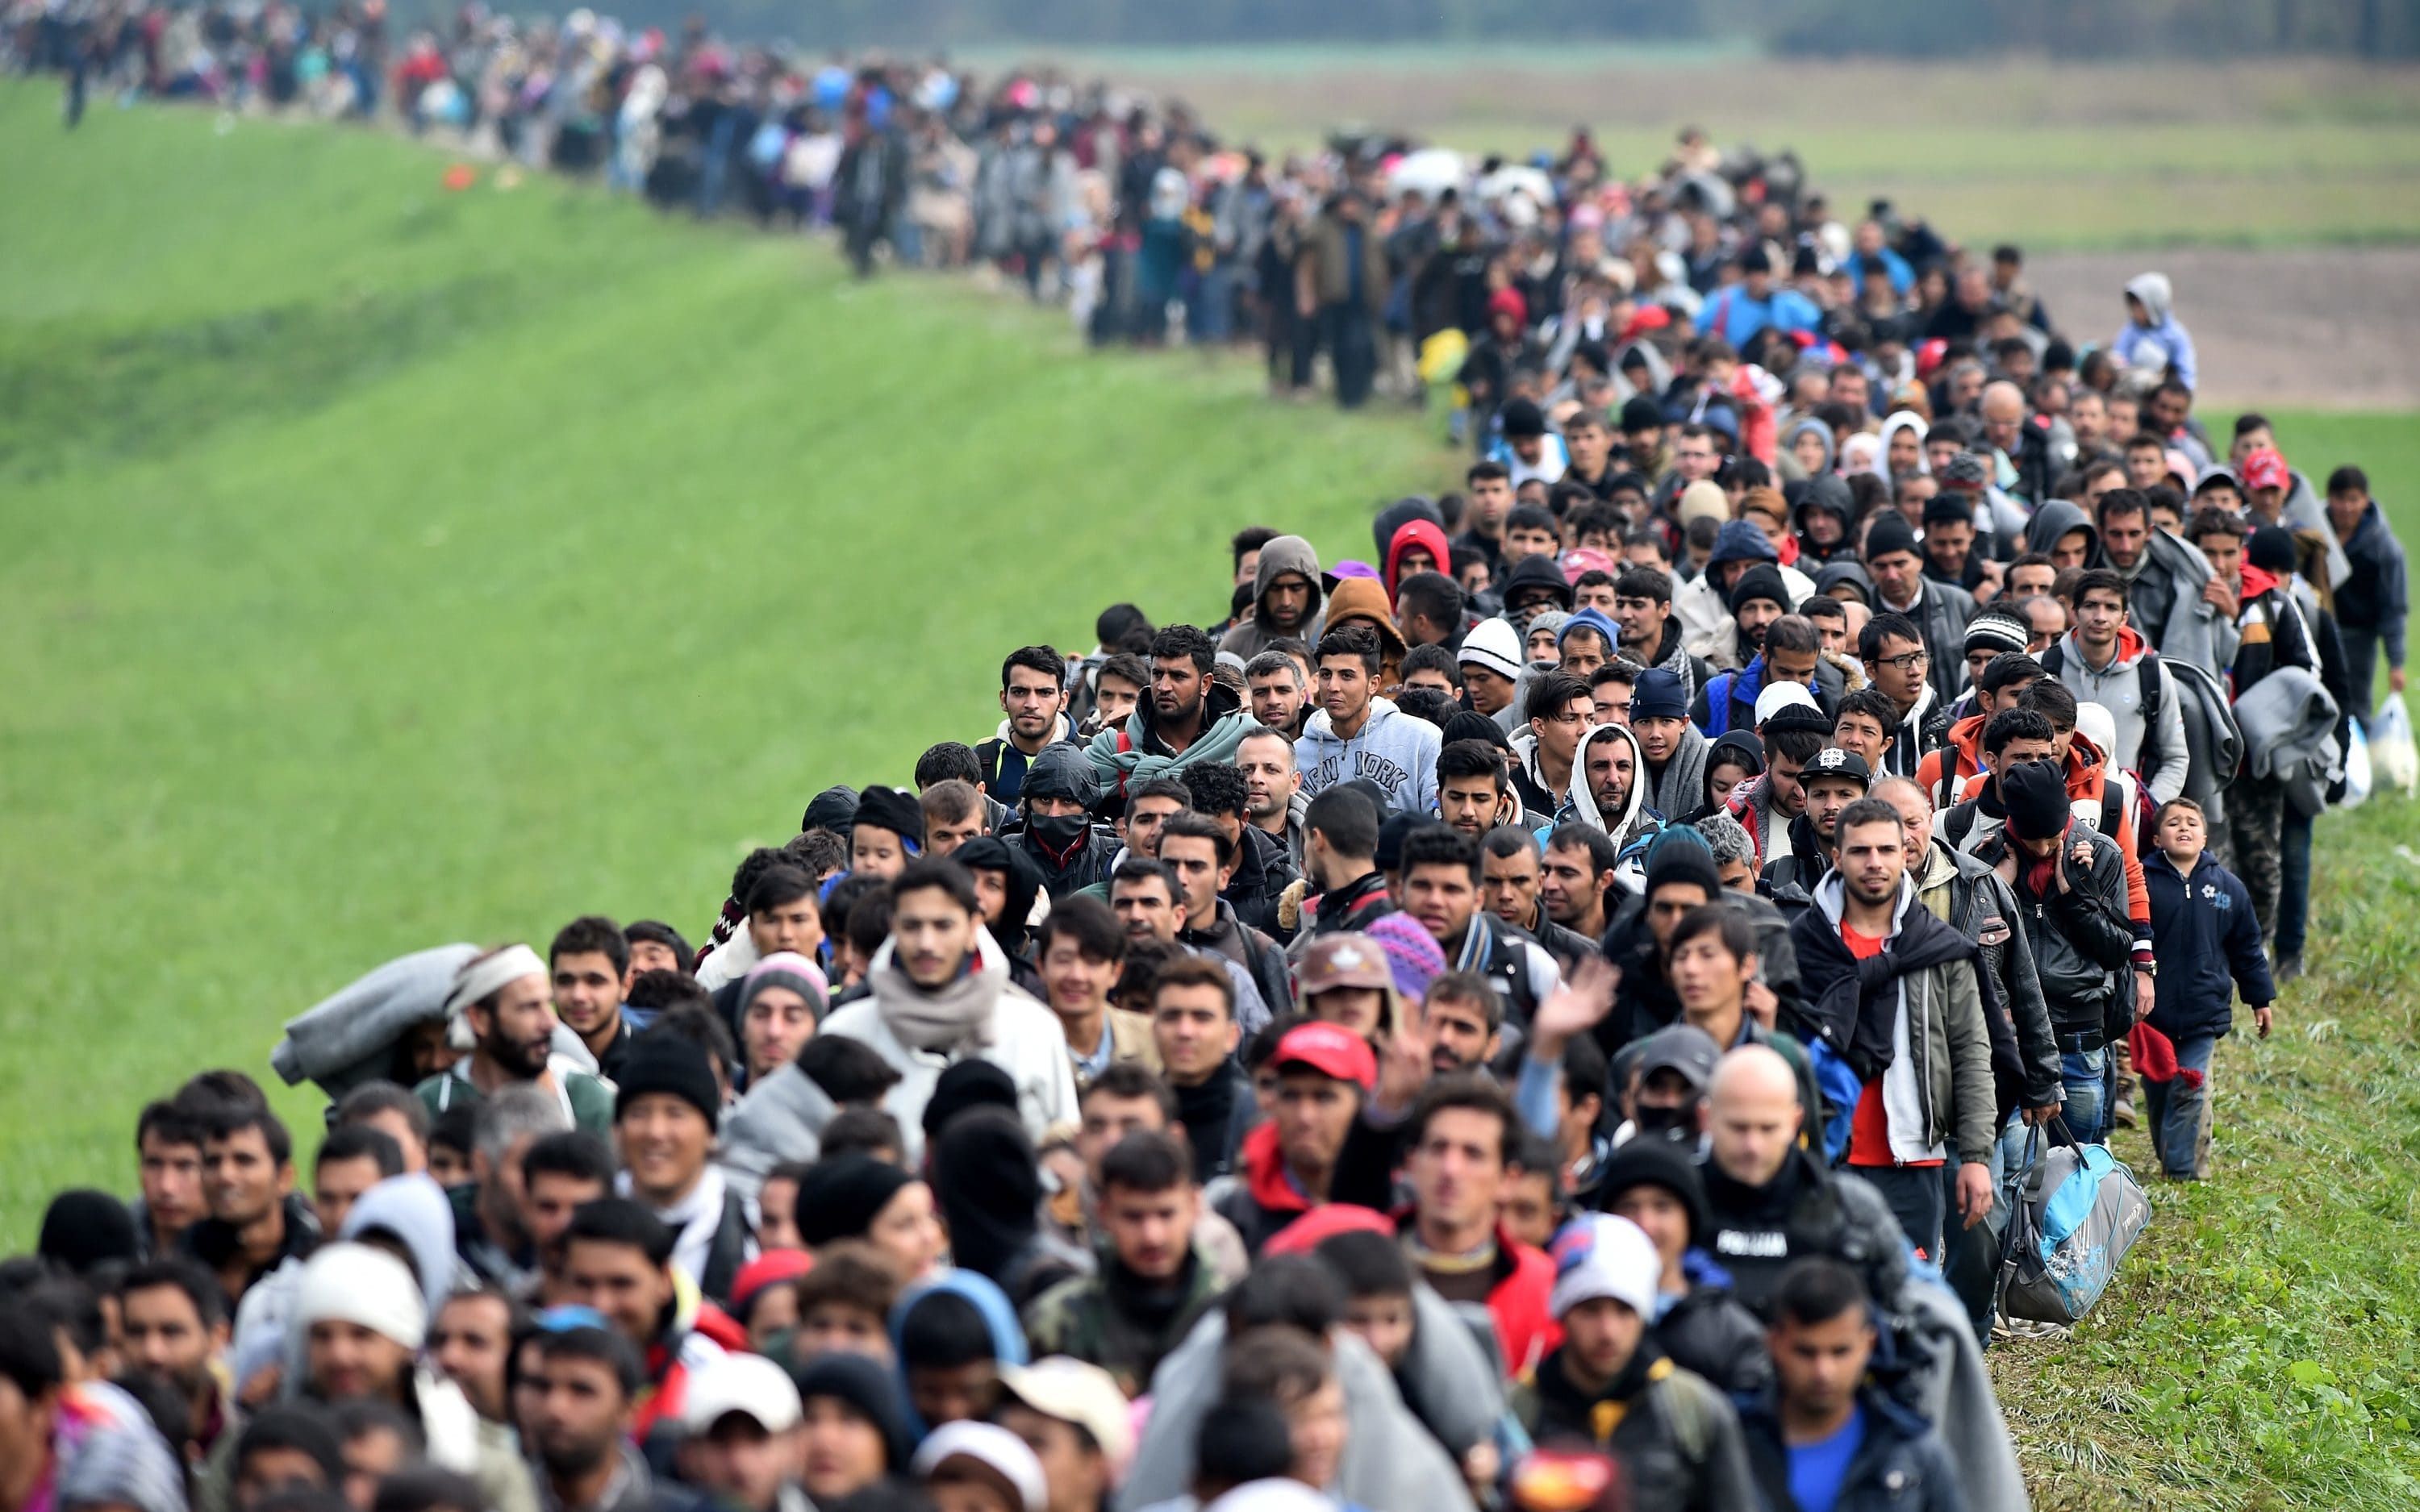 "Біженська хвиля" в ЄС: куди і чому їдуть найбільше 